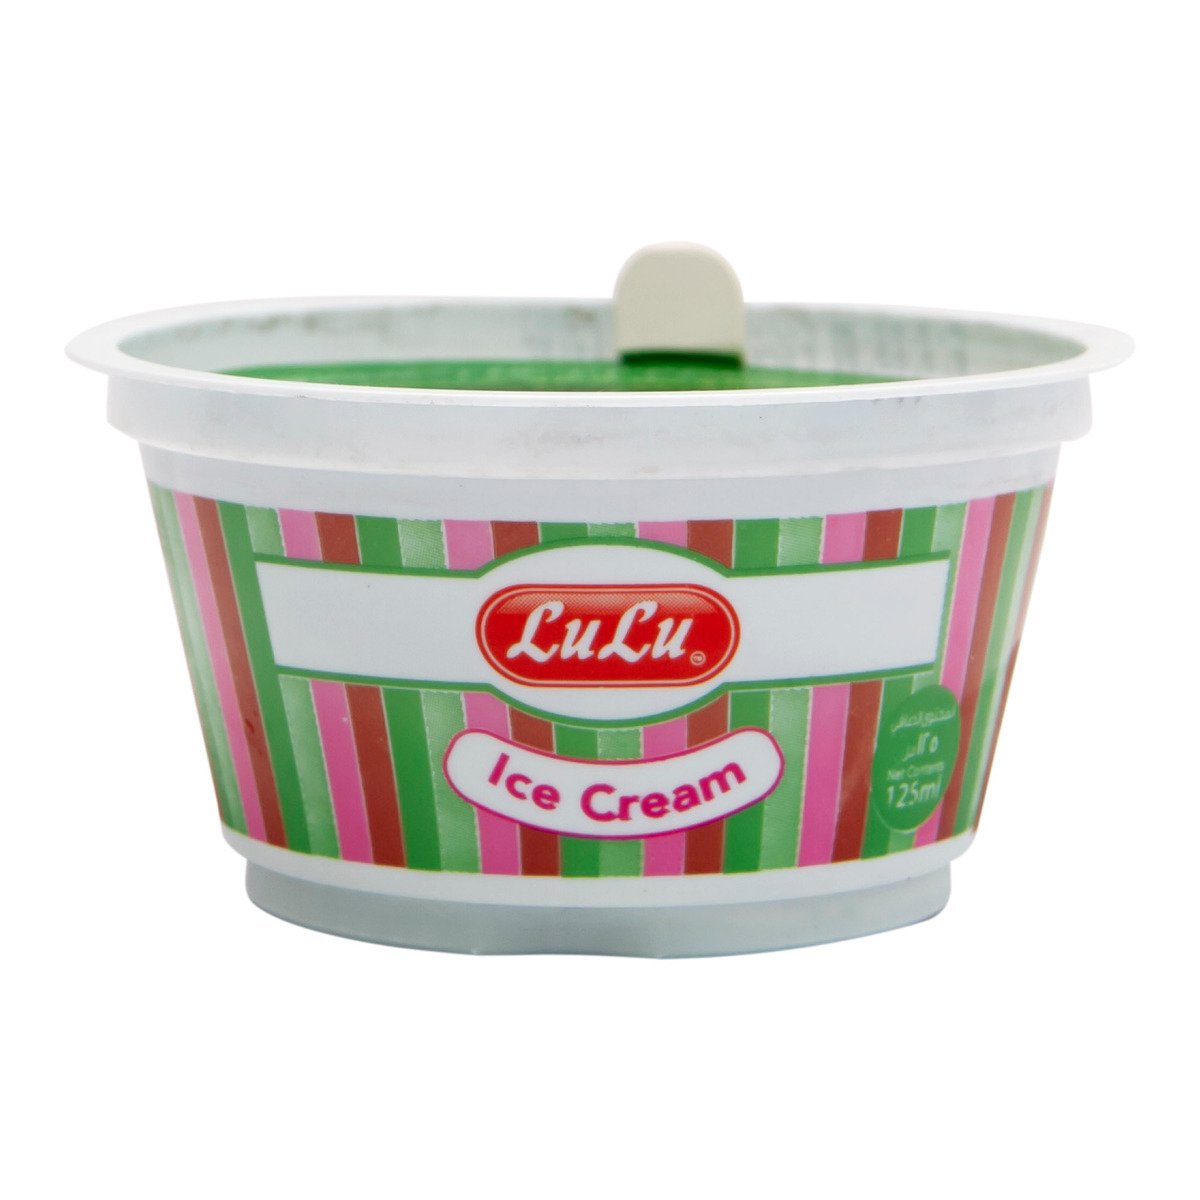 LuLu Pistachio Flavored Ice Cream 125 ml